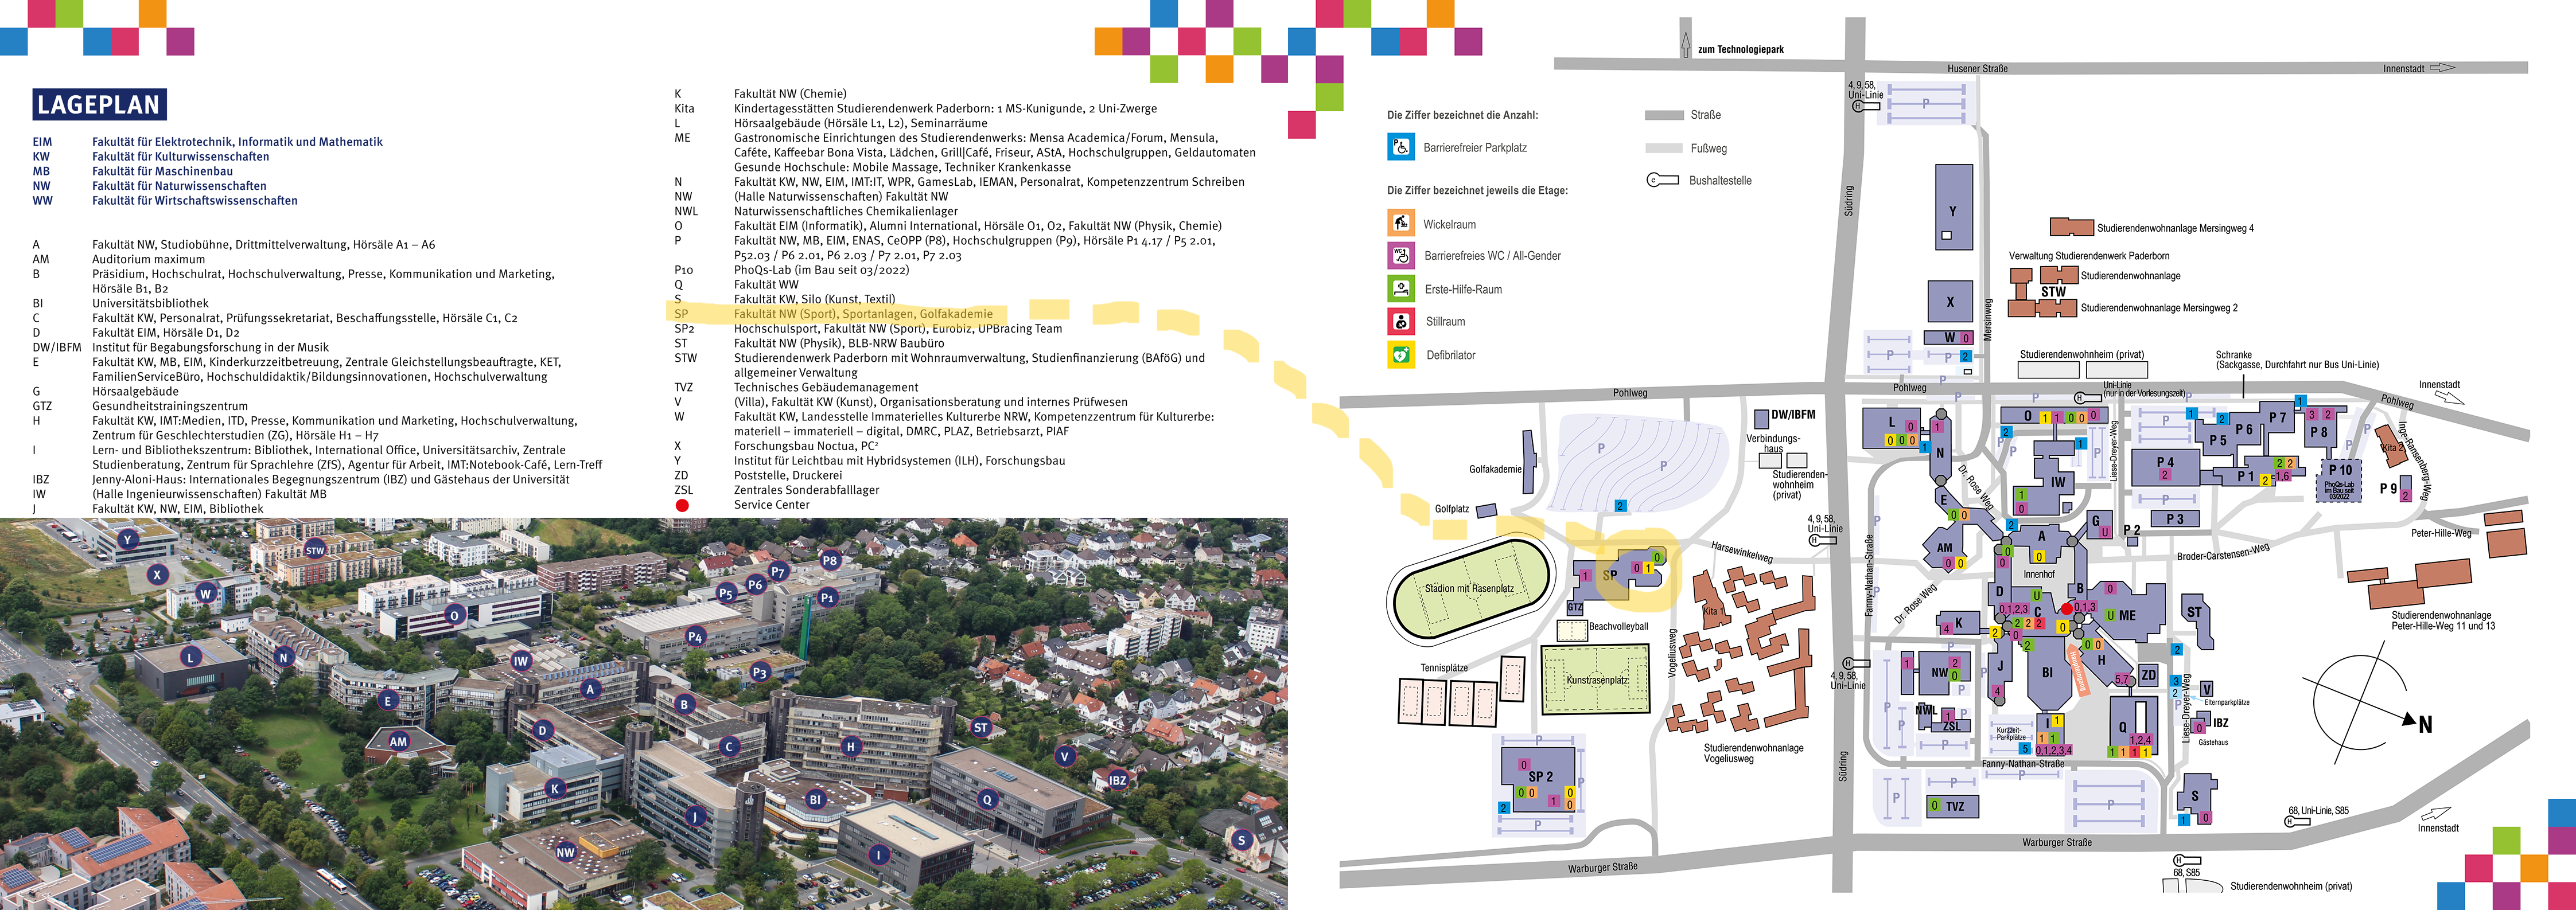 Lageplan Universität Paderborn - gelb markiert: Sportsoziologie